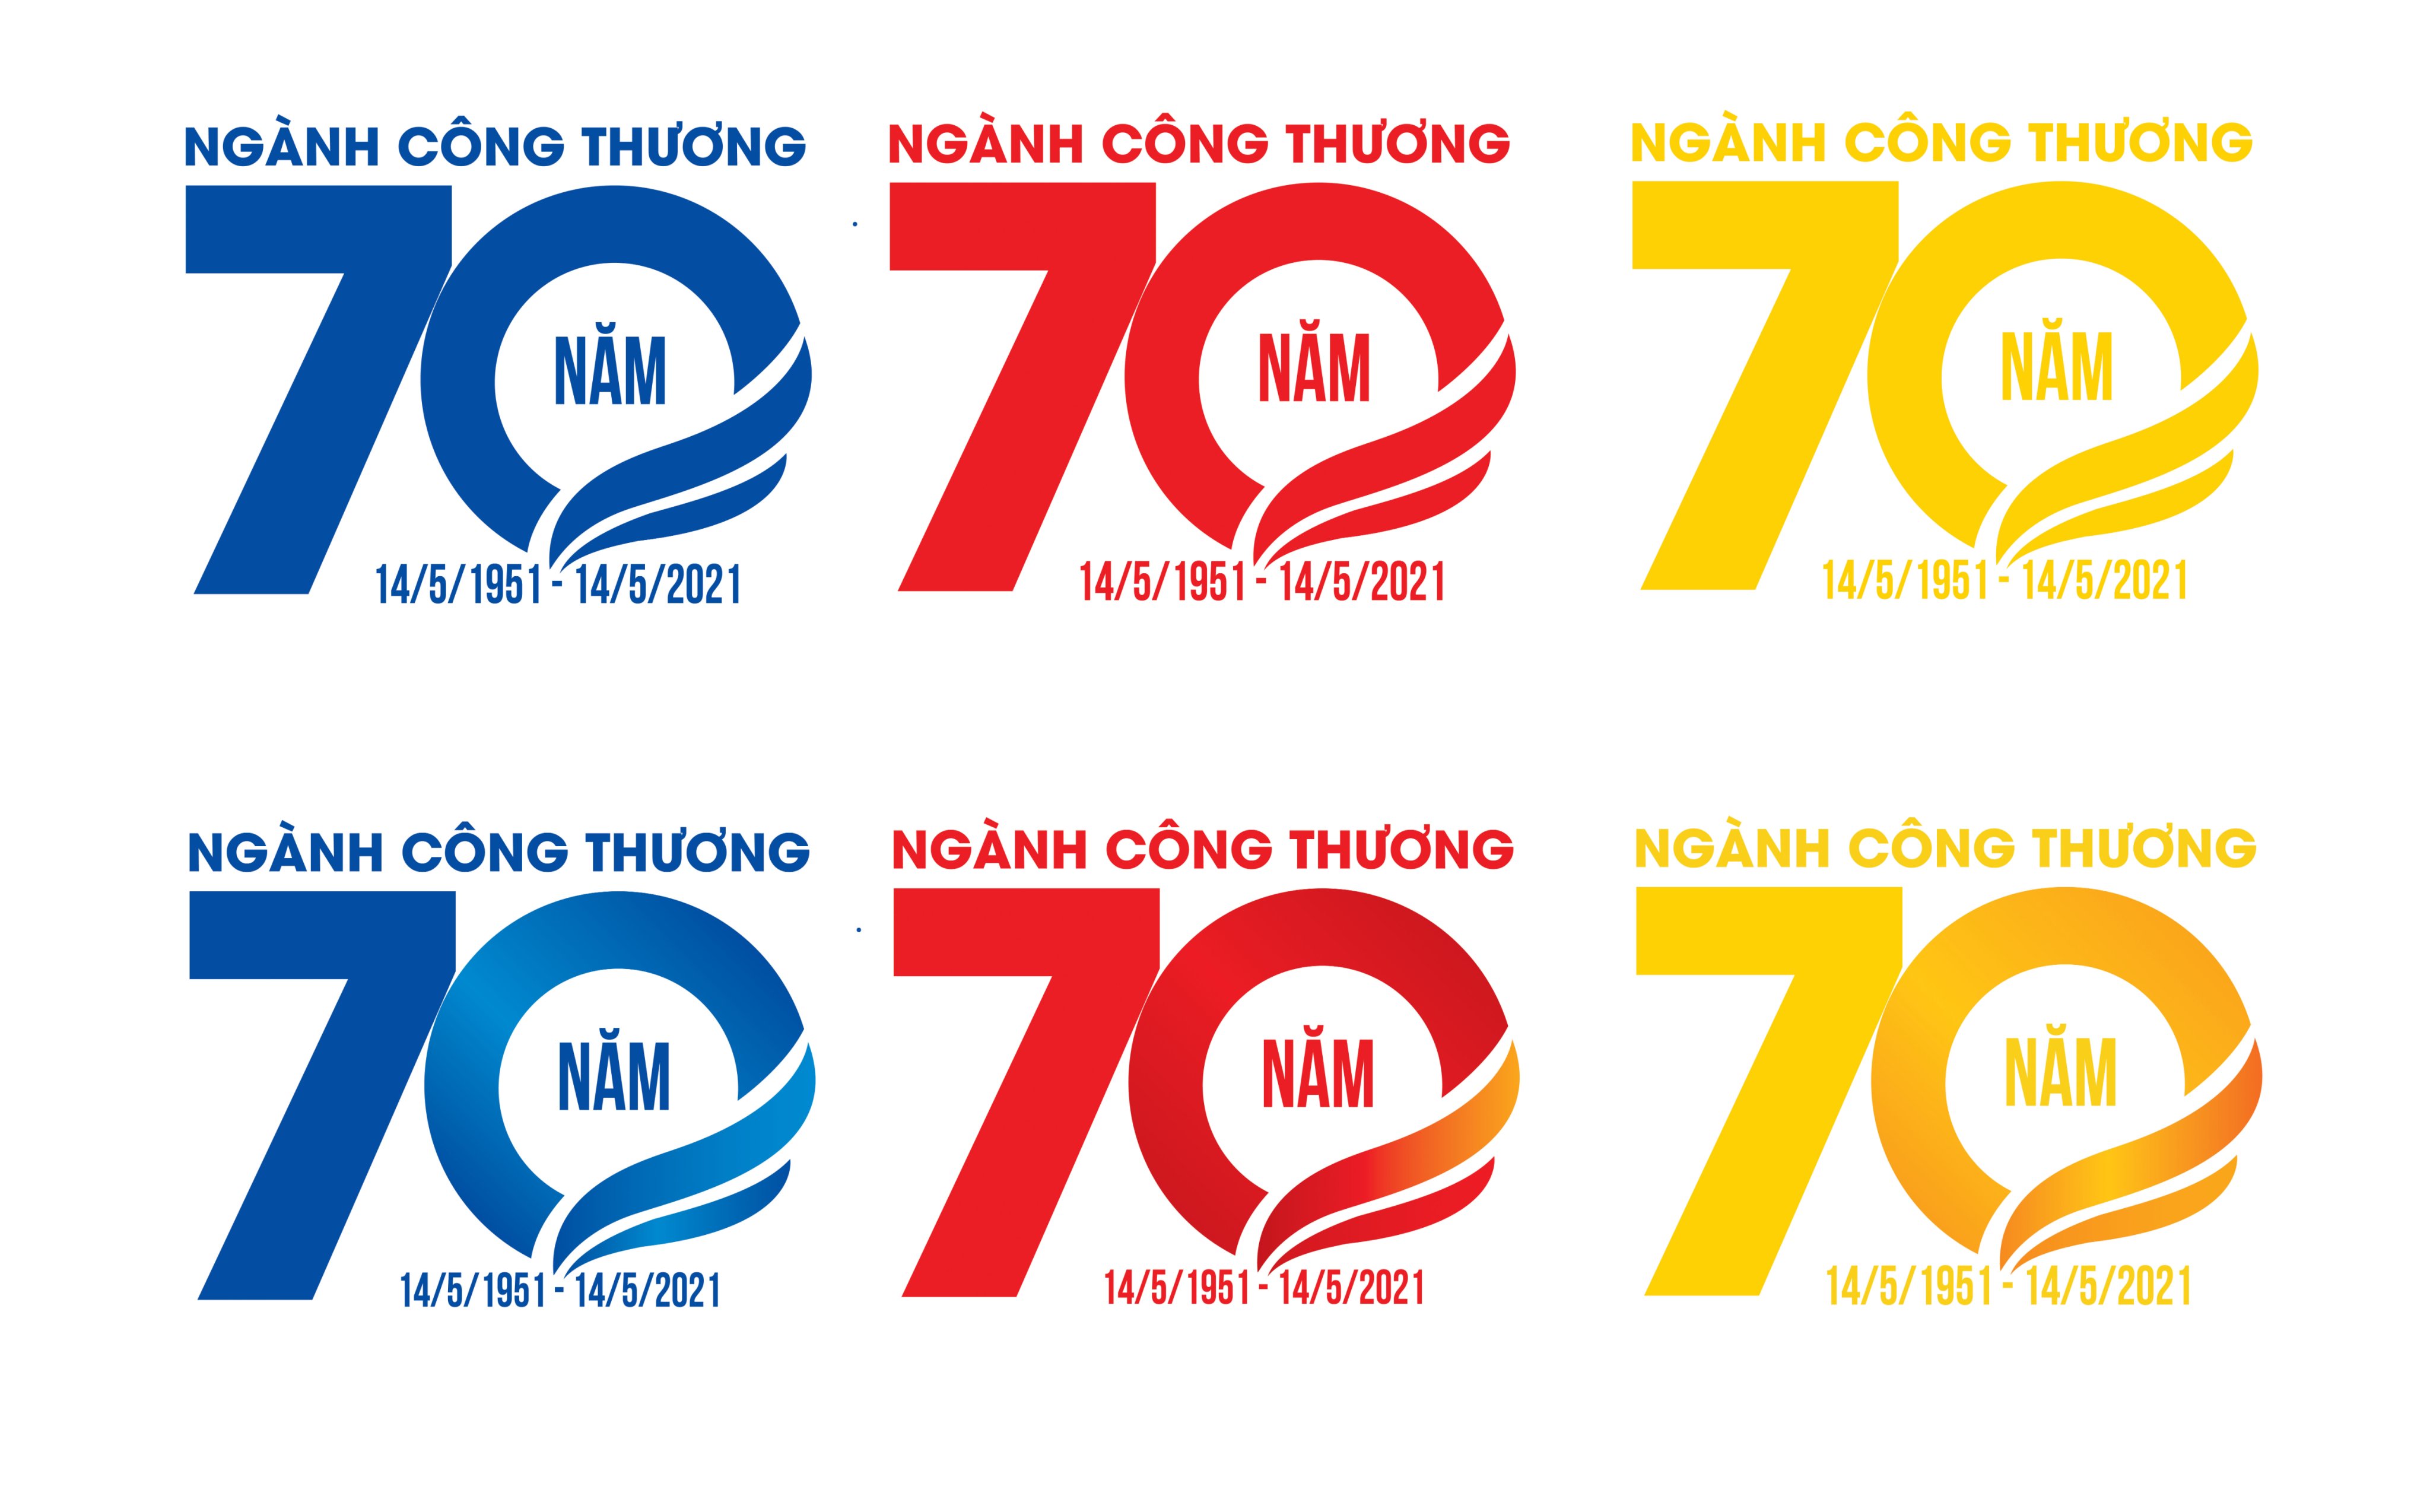 Giới thiệu Bộ nhận diện kỷ niệm 70 năm ngày truyền thống ngành Công Thương Việt Nam